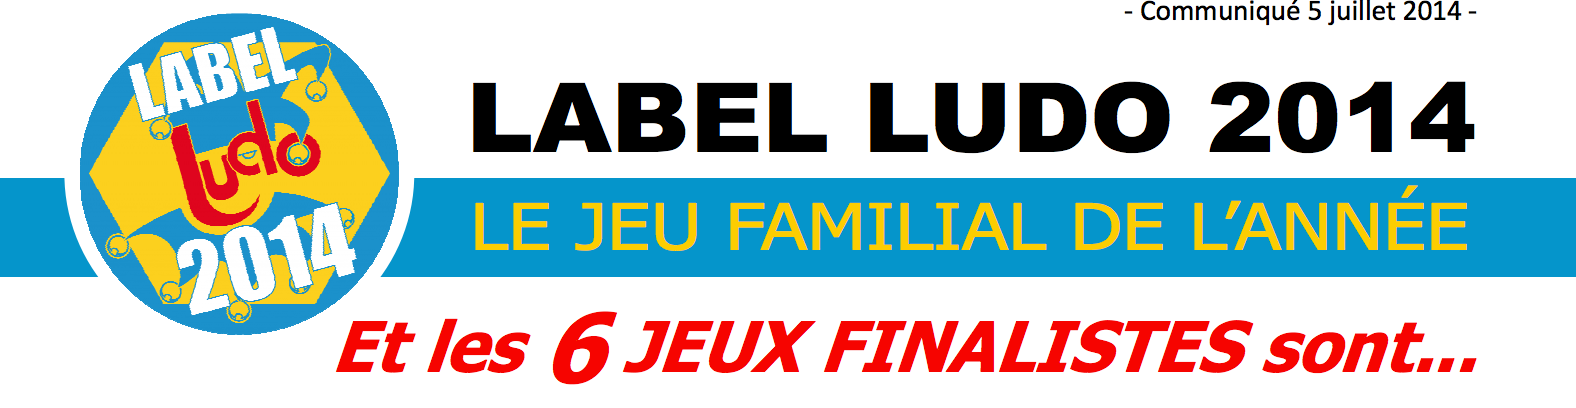 Label Ludo 2014 – Les Nominés